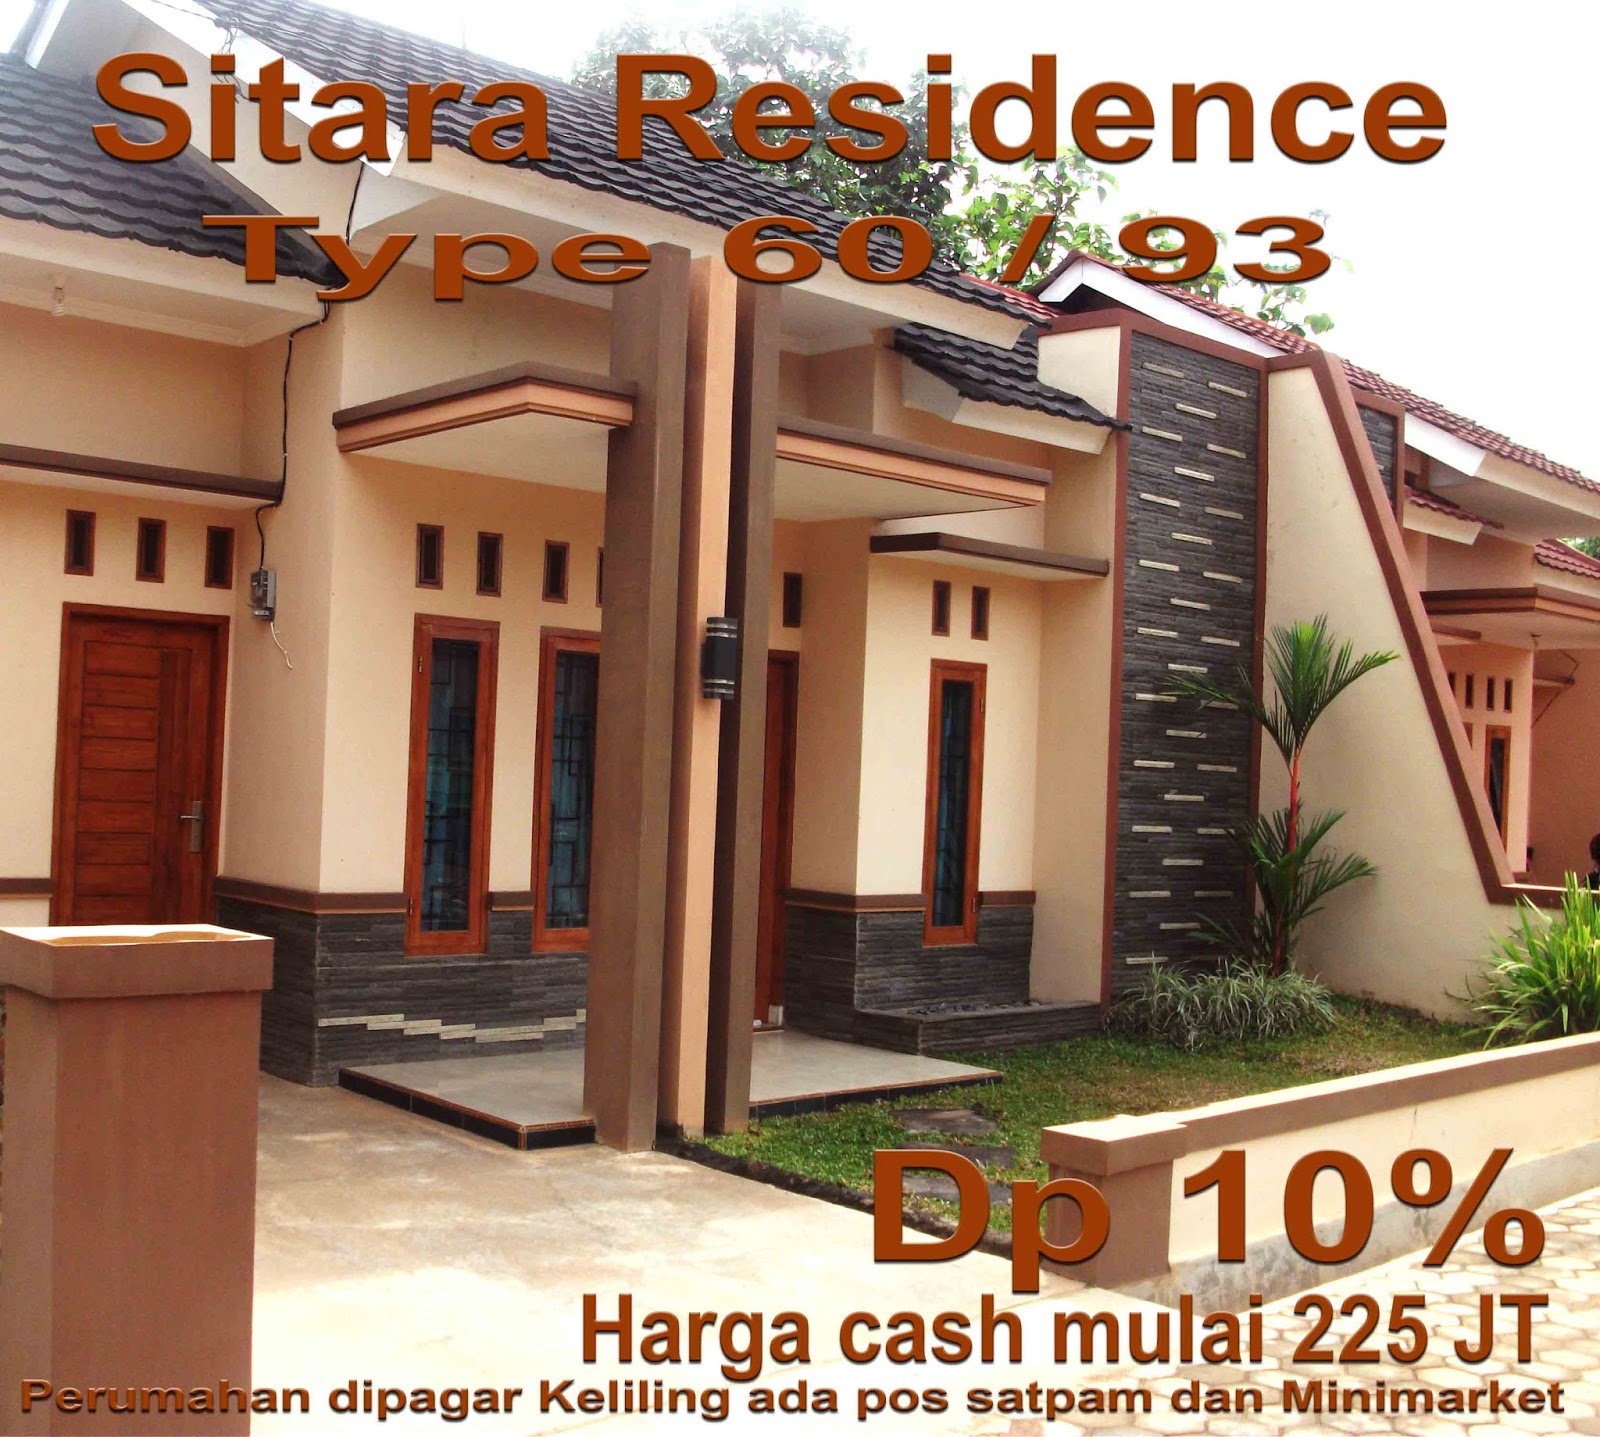 Rumah Dijual Sitara Residence